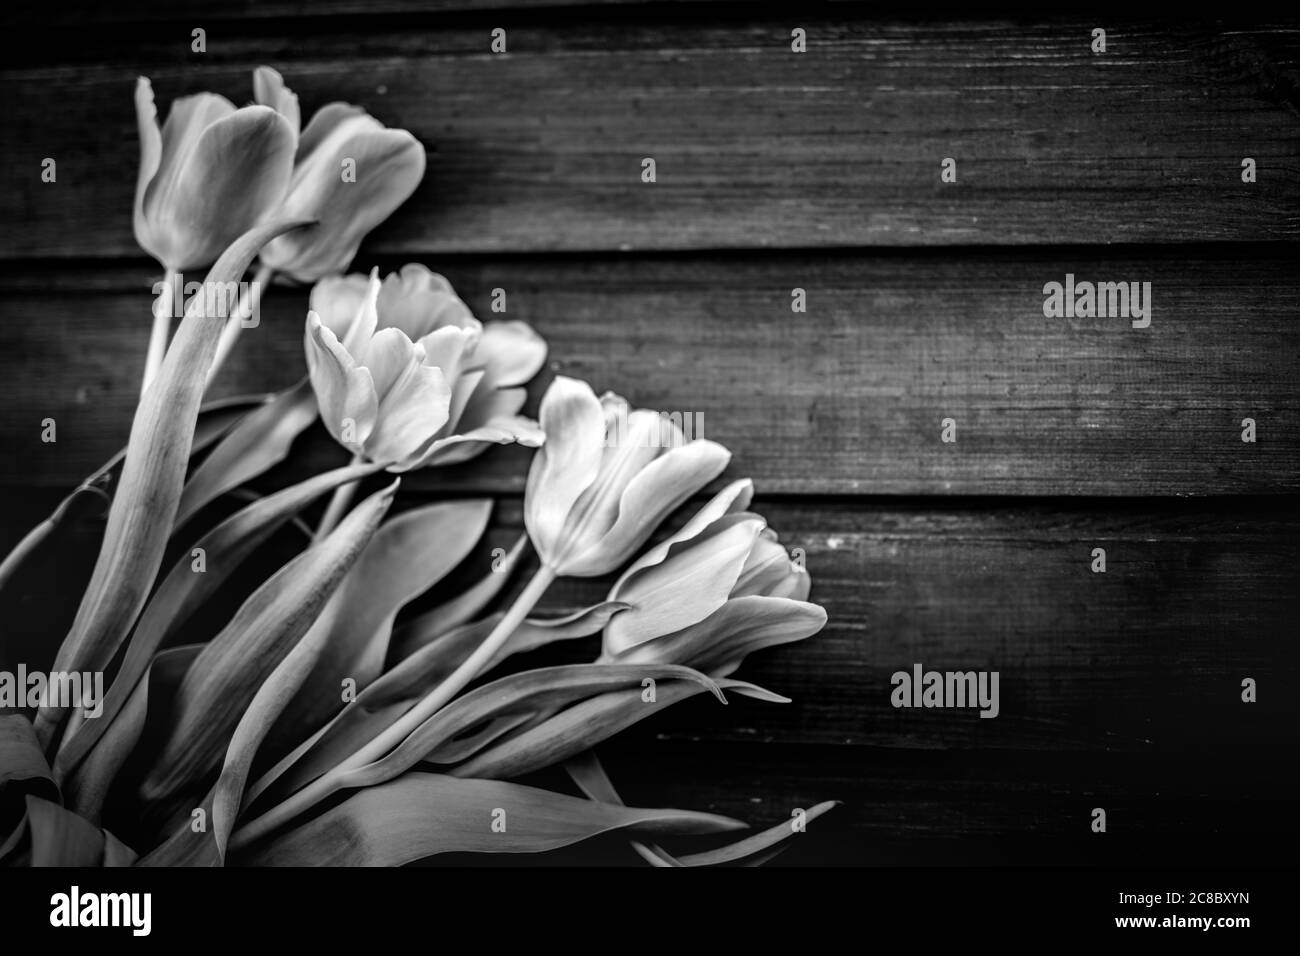 Vue de dessus des tulipes fleuris sur une surface en bois, concept de fête des mères. Processus abstrait noir et blanc. Fête des femmes. Bouquet de tulipes roses sur planches en bois Banque D'Images